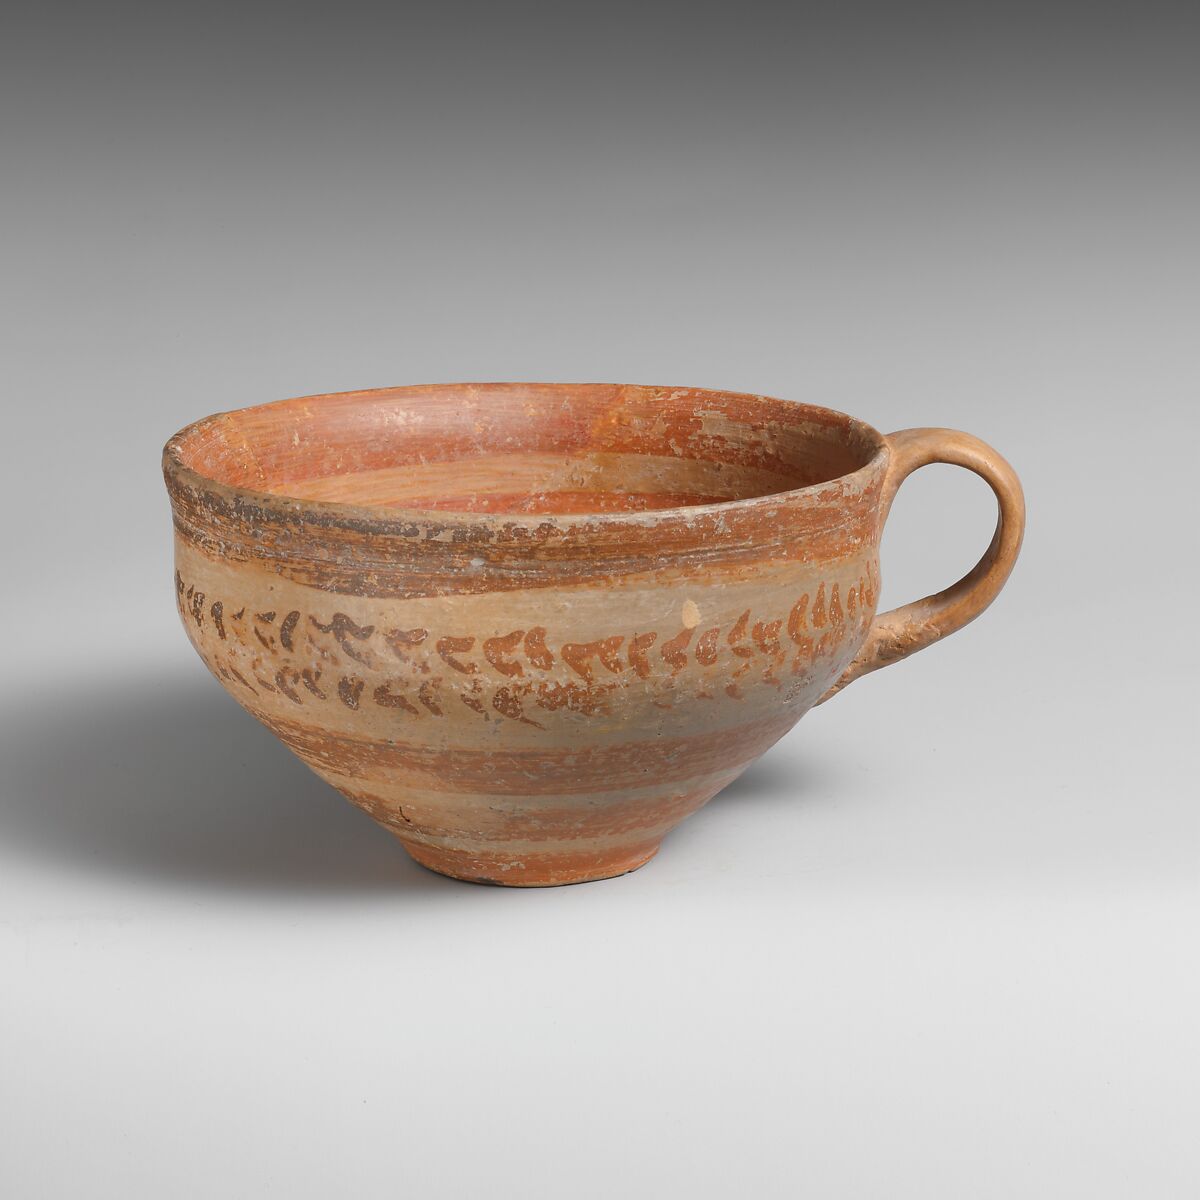 【テラコッタ片耳杯　Terracotta hemispherical cup】古代ギリシャ‐後期ミノア文明